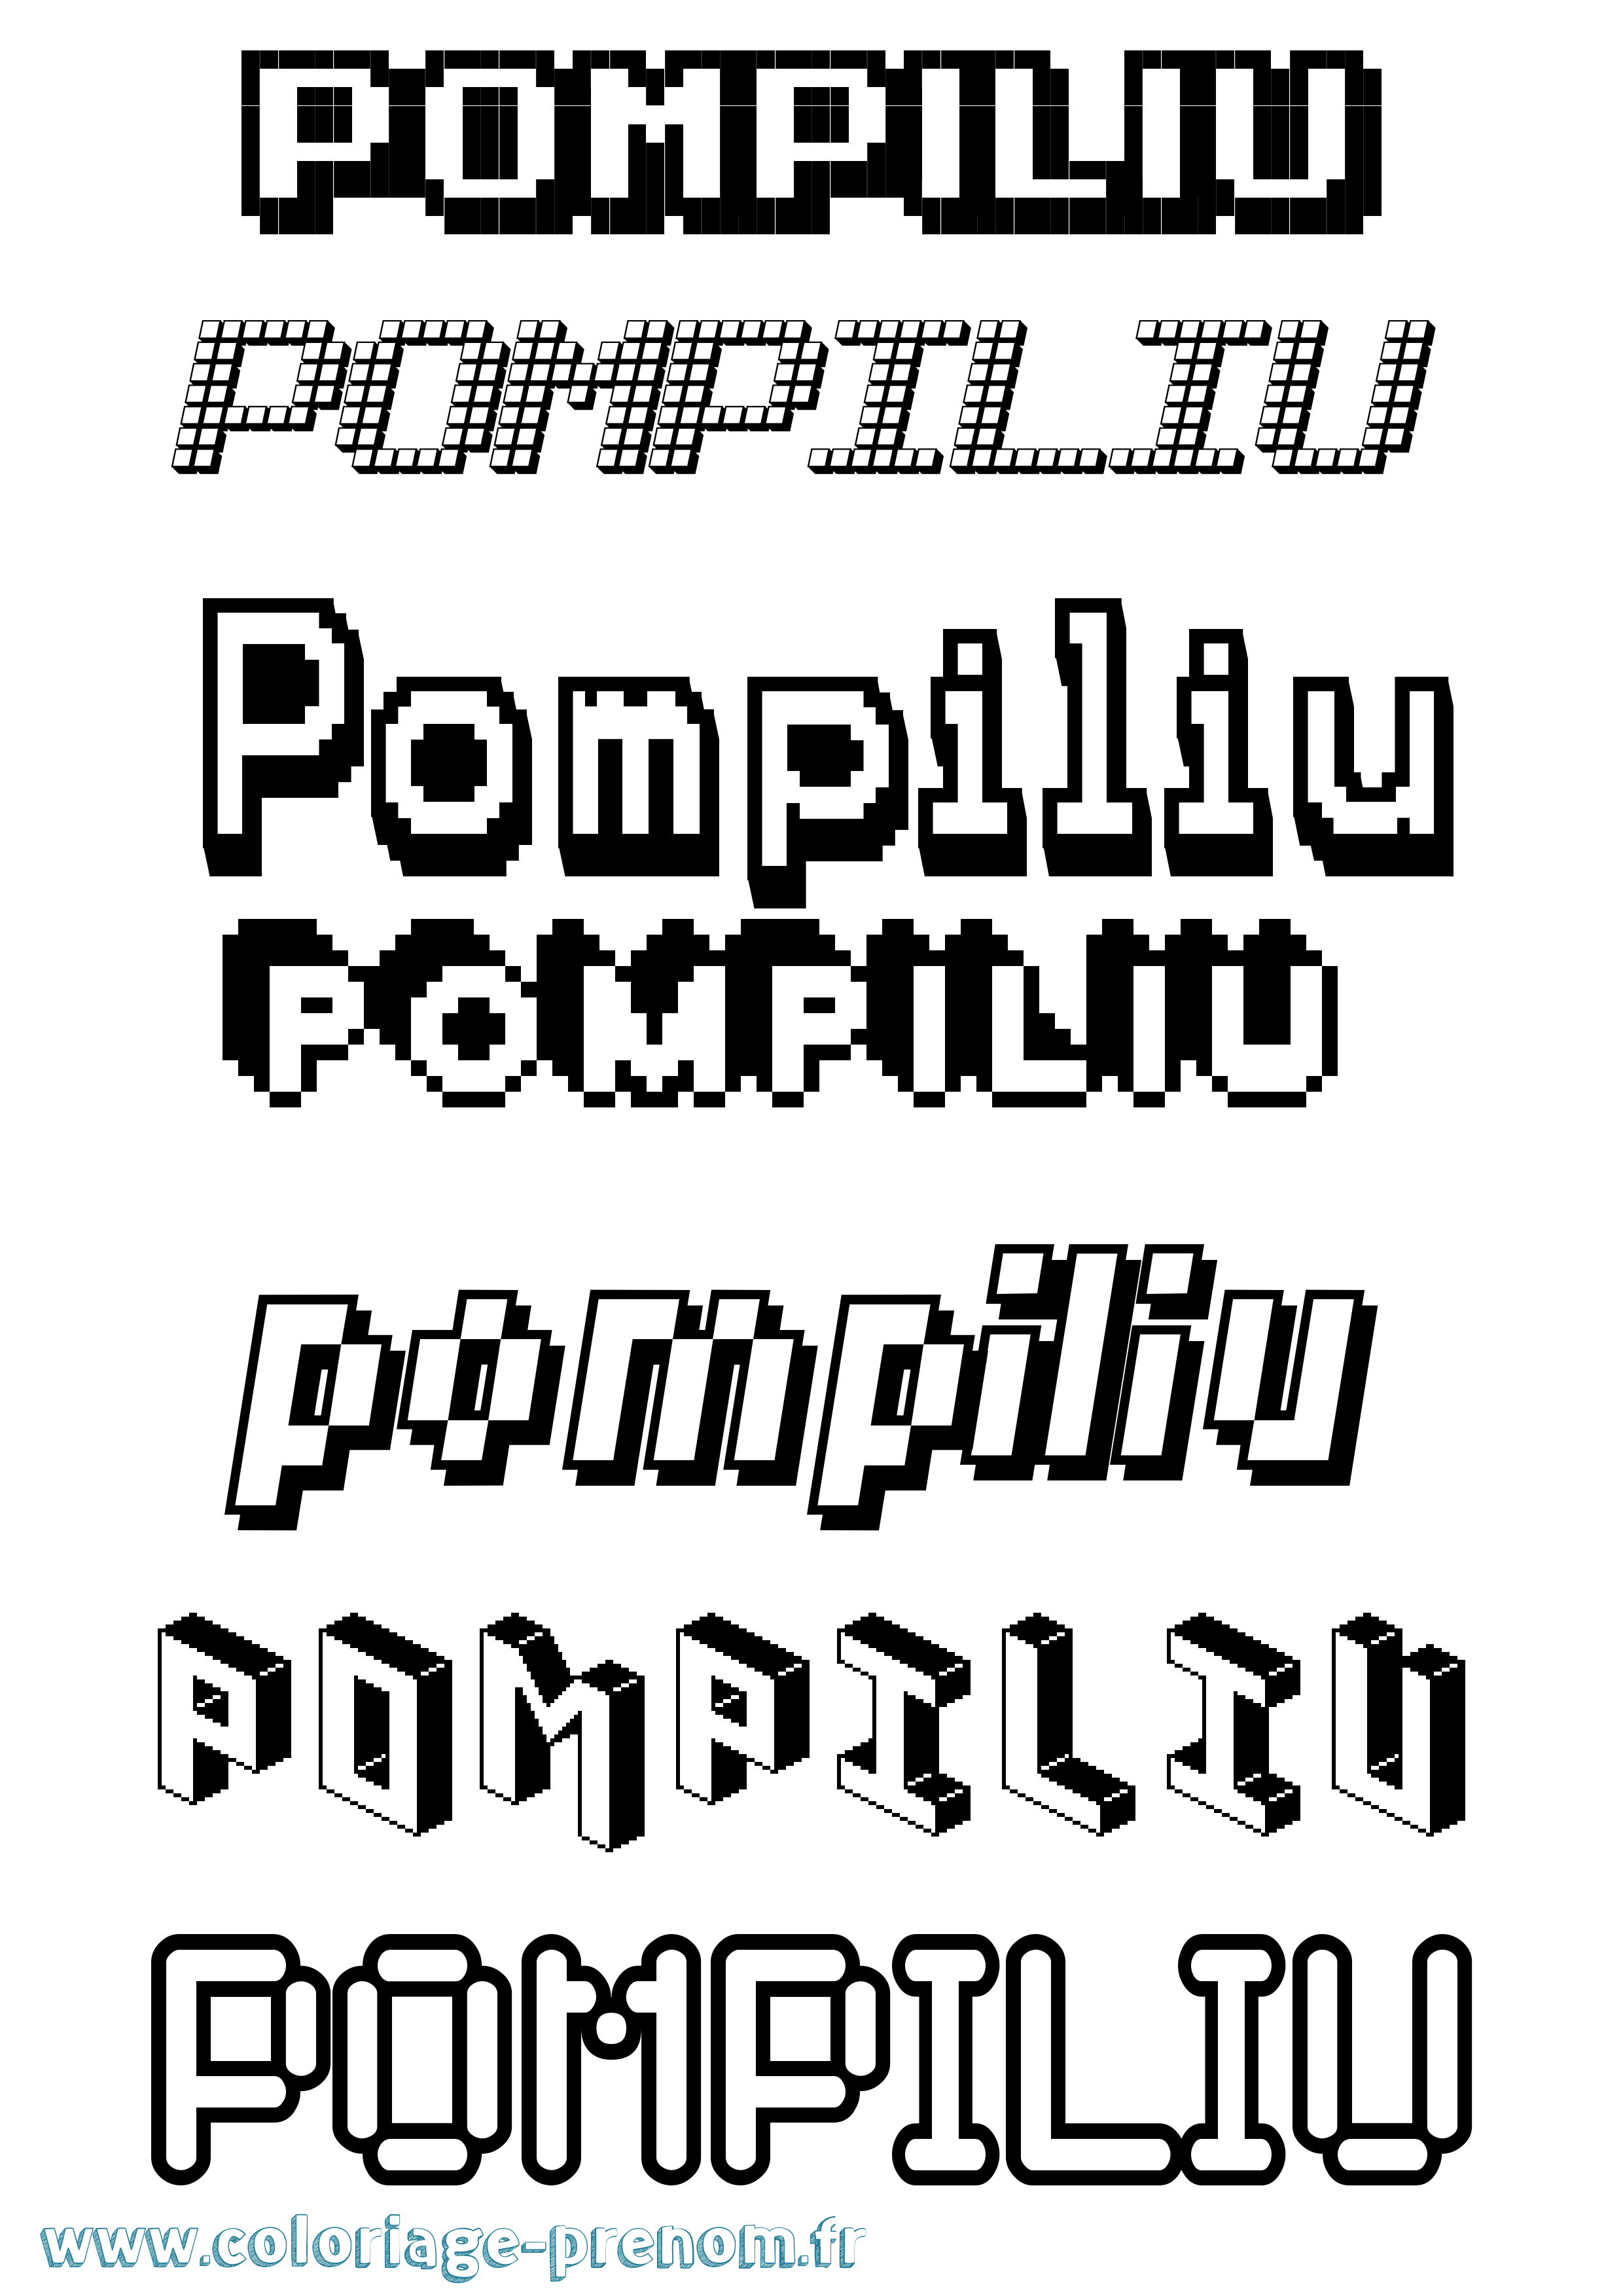 Coloriage prénom Pompiliu Pixel